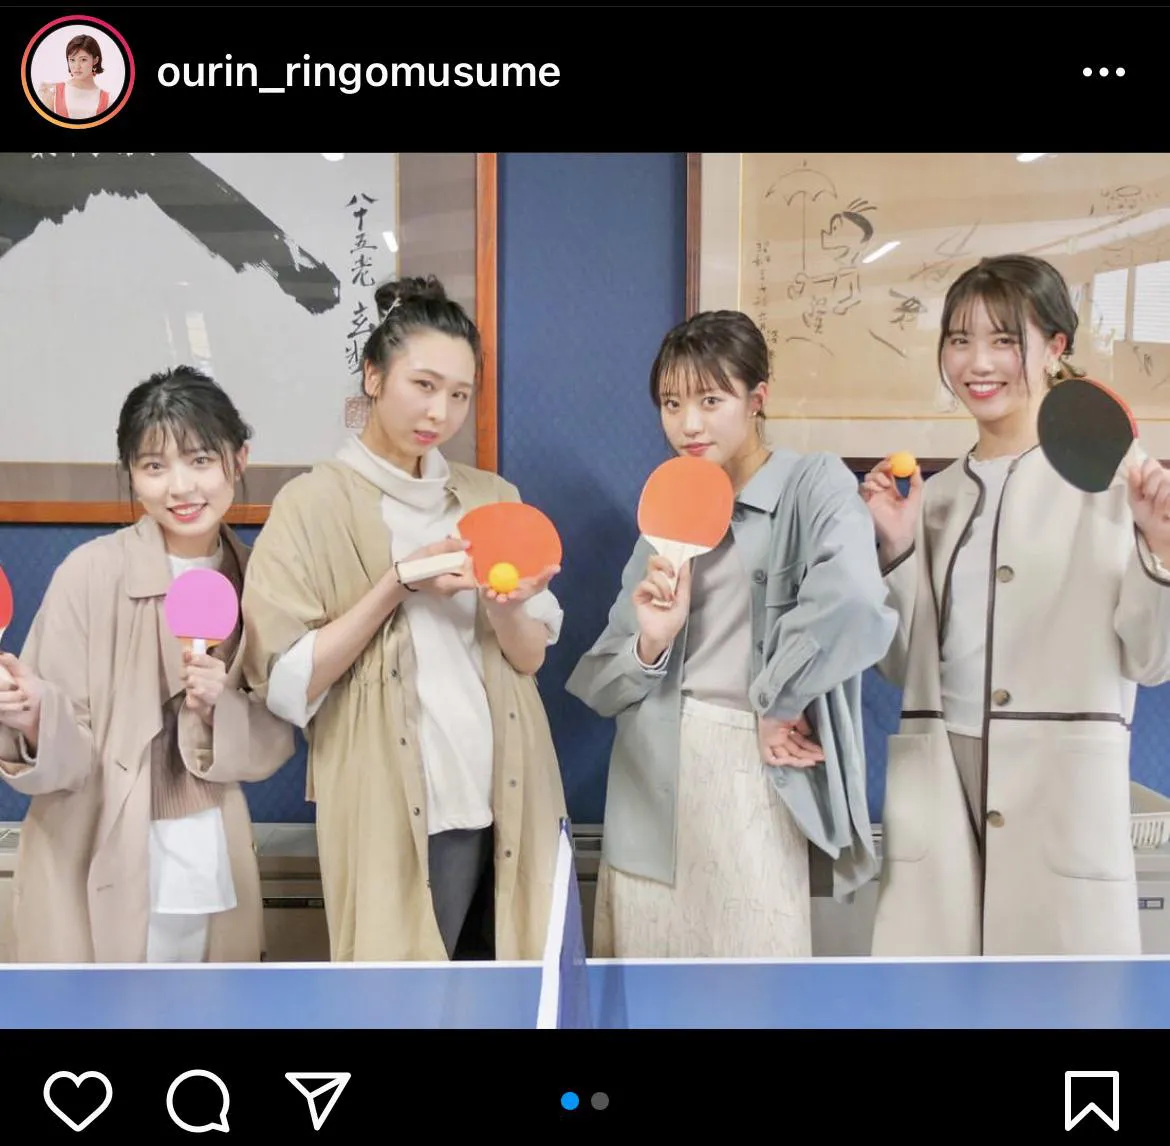 ※画像は王林(ourin_ringomusume)公式Instagramのスクリーンショット